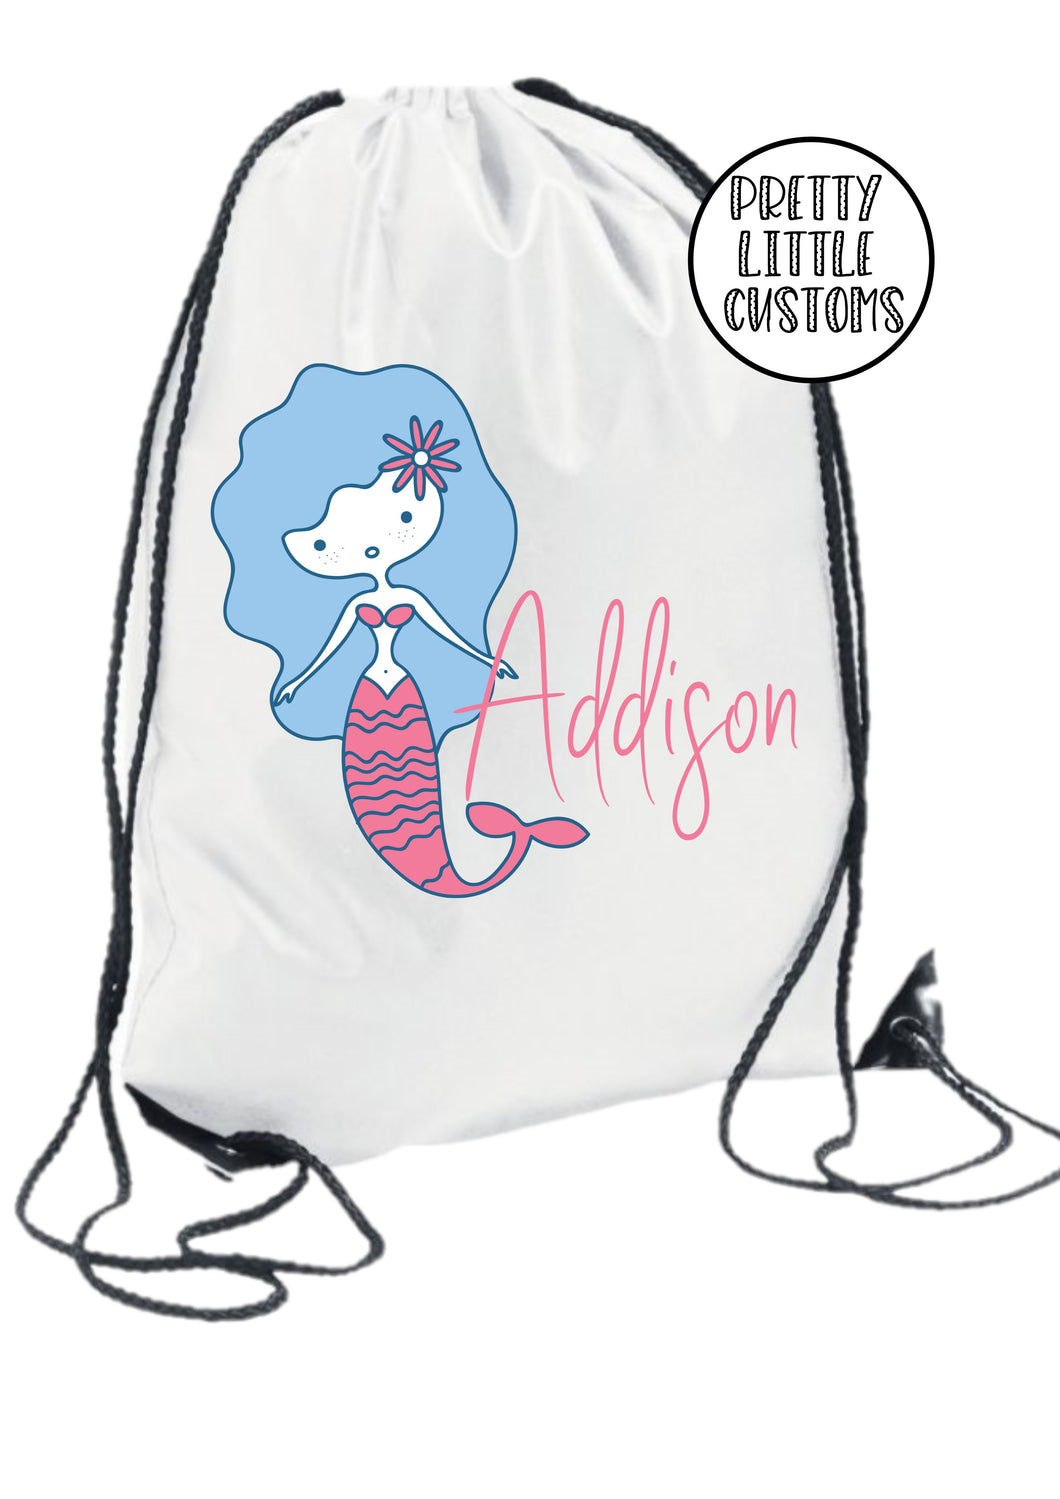 Personalised kids name gym bag/PE bag/school bag - mermaid style 3